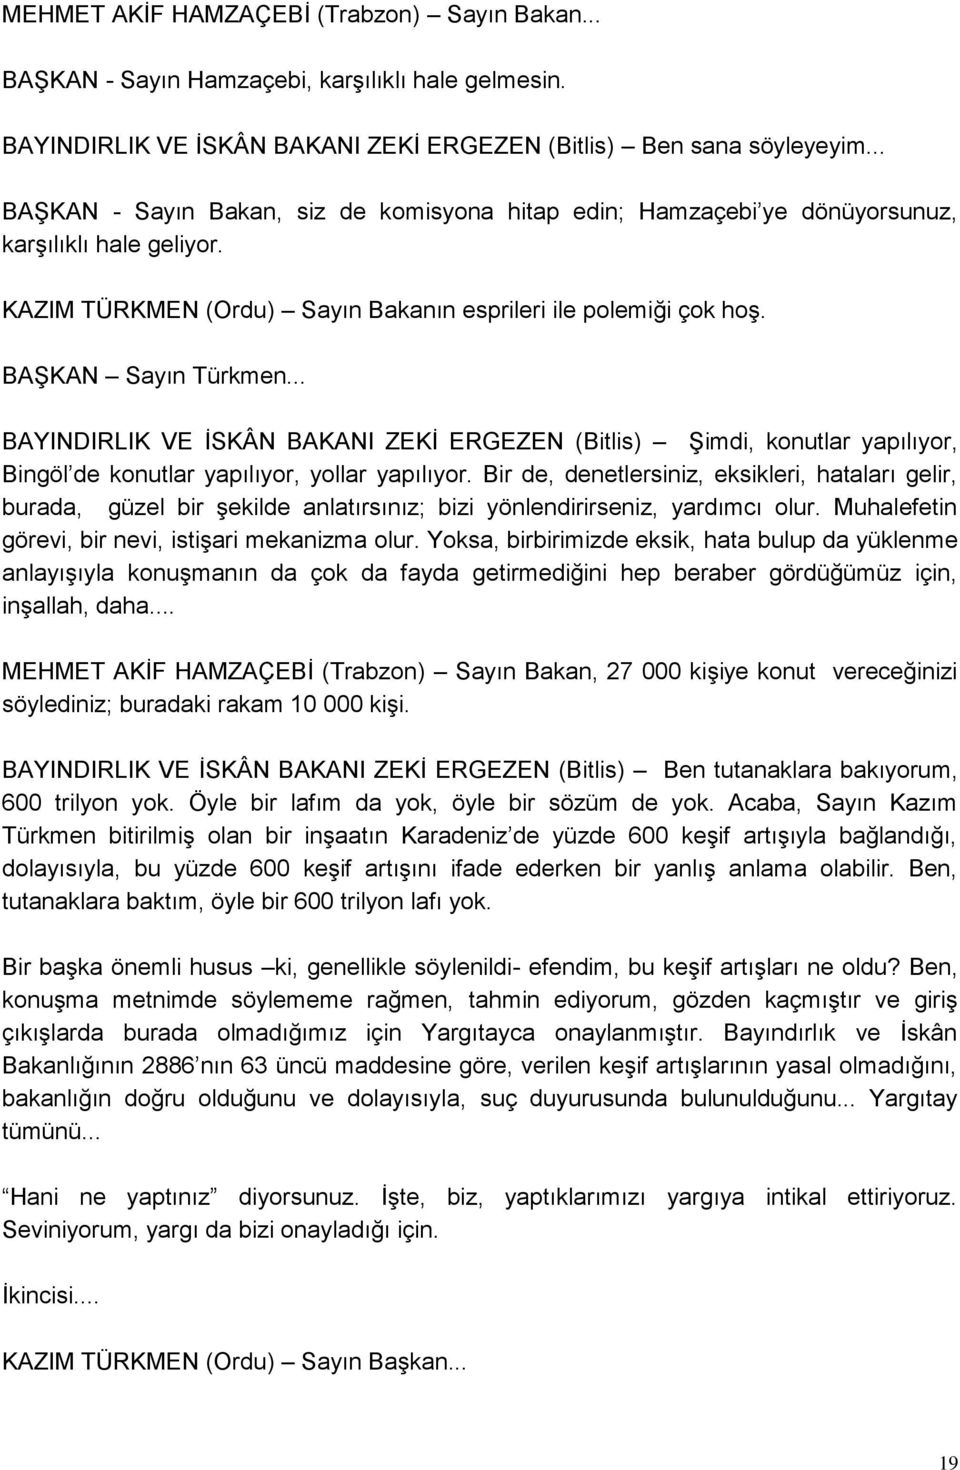 .. BAYINDIRLIK VE ĠSKÂN BAKANI ZEKĠ ERGEZEN (Bitlis) ġimdi, konutlar yapılıyor, Bingöl de konutlar yapılıyor, yollar yapılıyor.